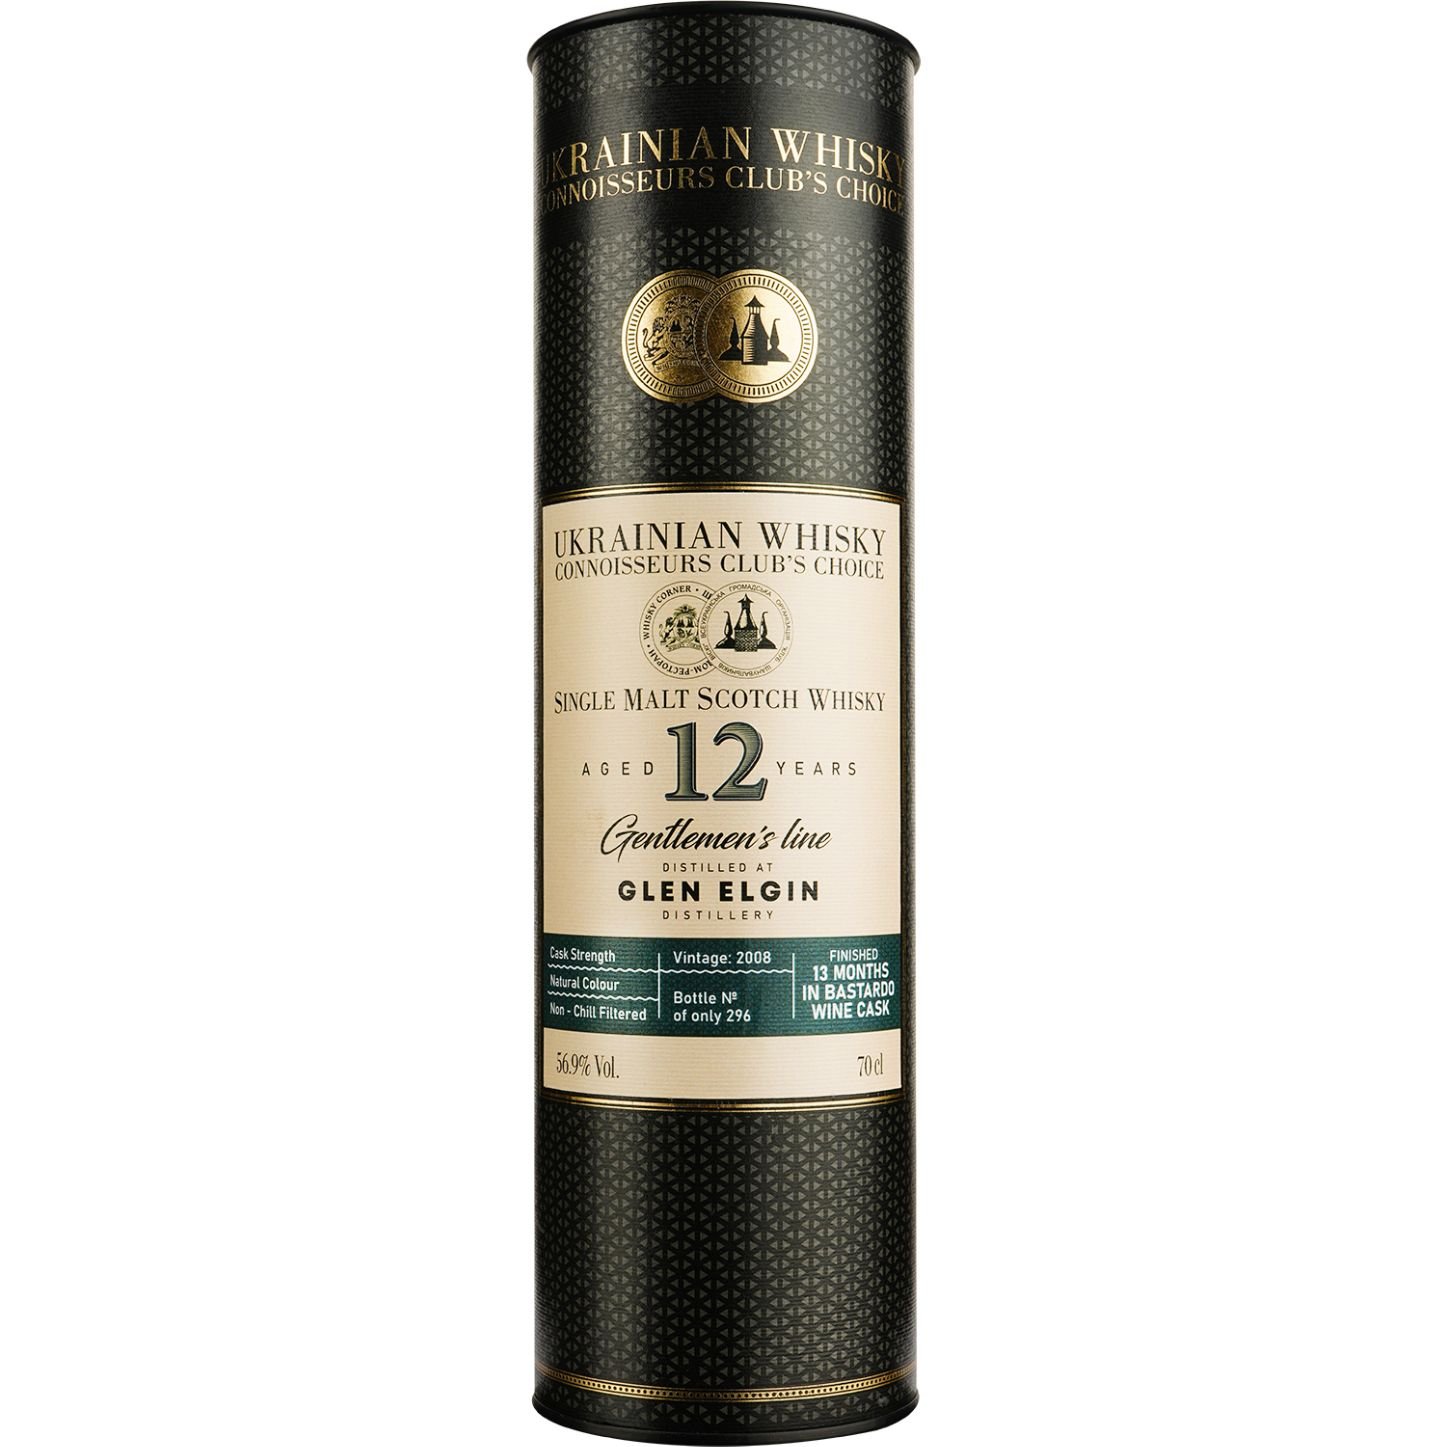 Віскі Glen Elgin 12 Years Old Bastardo Single Malt Scotch Whisky, у подарунковій упаковці, 56,9%, 0,7 л - фото 3